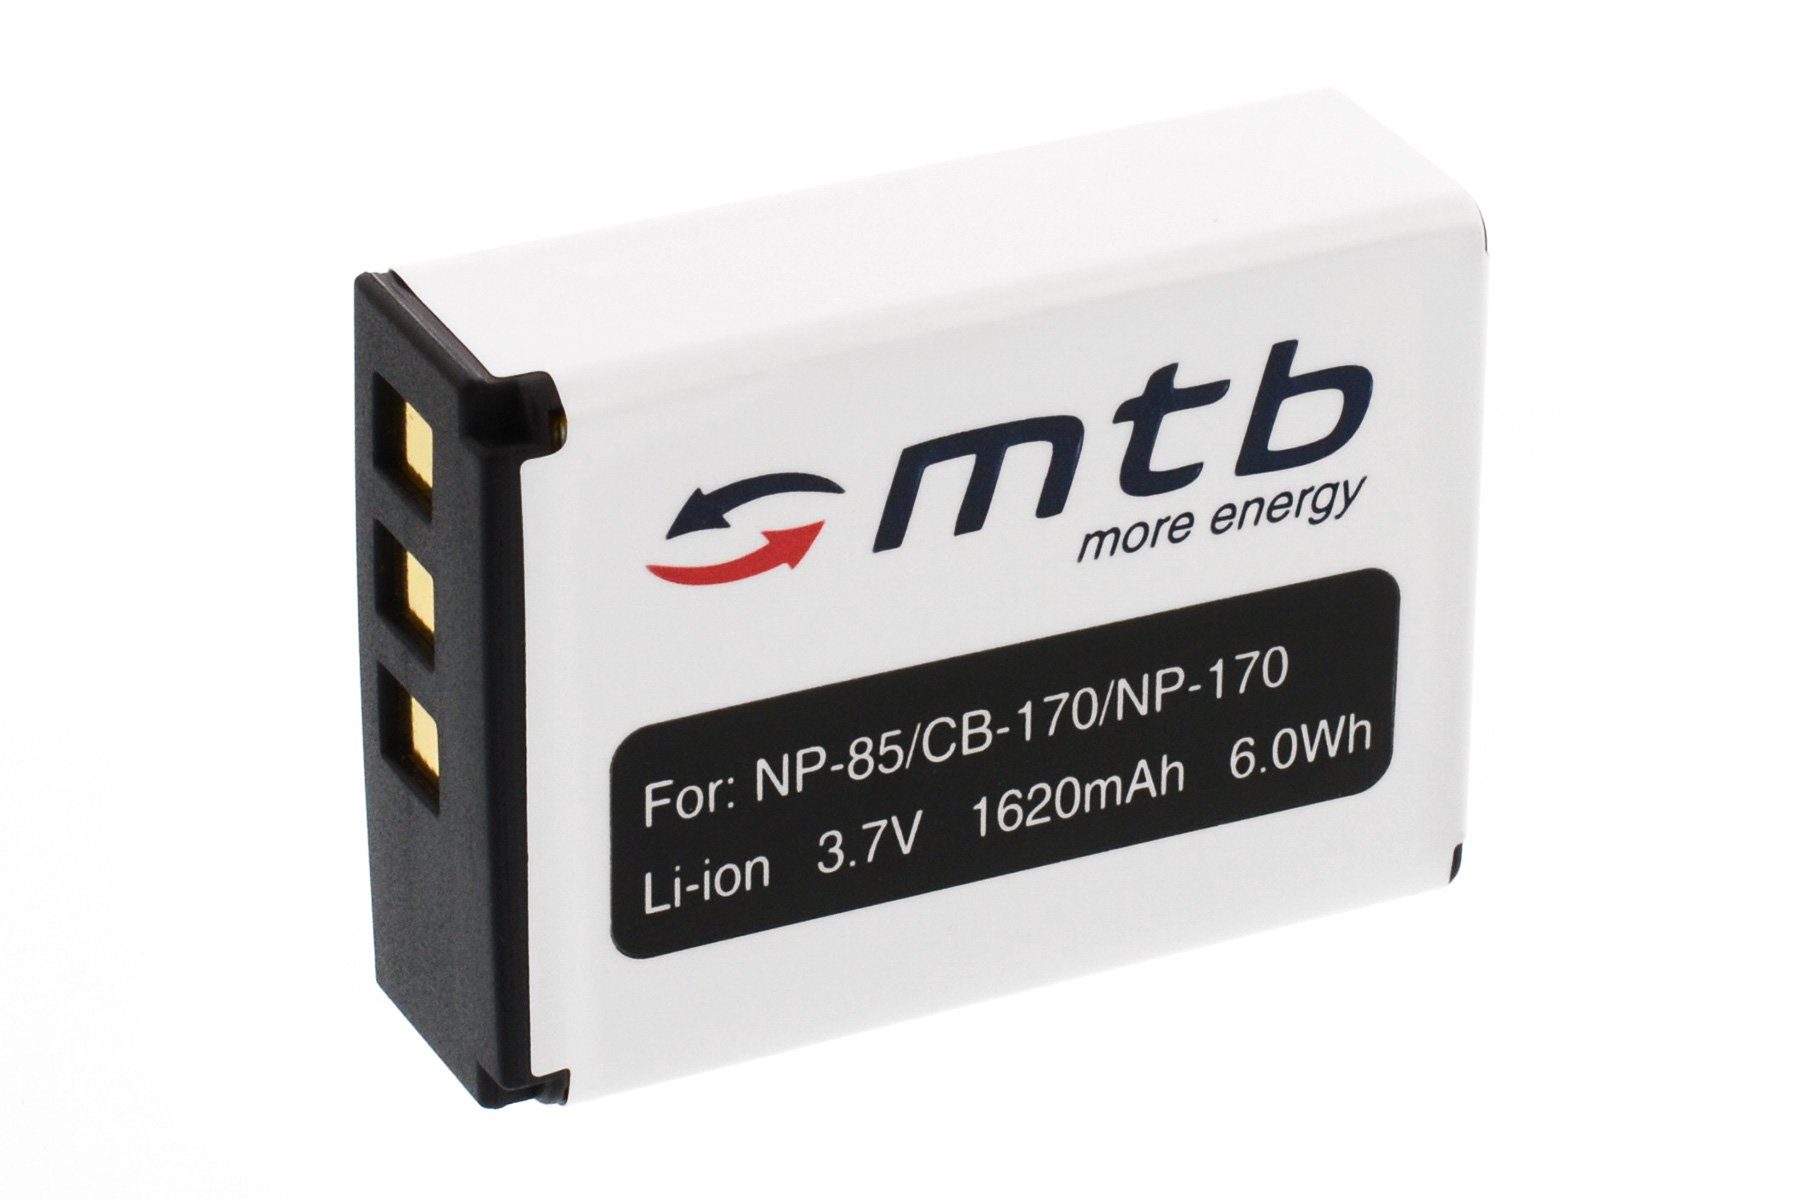 mtb more energy [BAT-352 - Li-Ion] Kamera-Akku kompatibel mit Akku-Typ Fuji NP-85 / CB-170 / NP-170 1620 mAh (3,7 V), passend für: Fuji Fujifilm Finepix S1, SL240, SL260, SL280, SL300, SL305, SL1000…